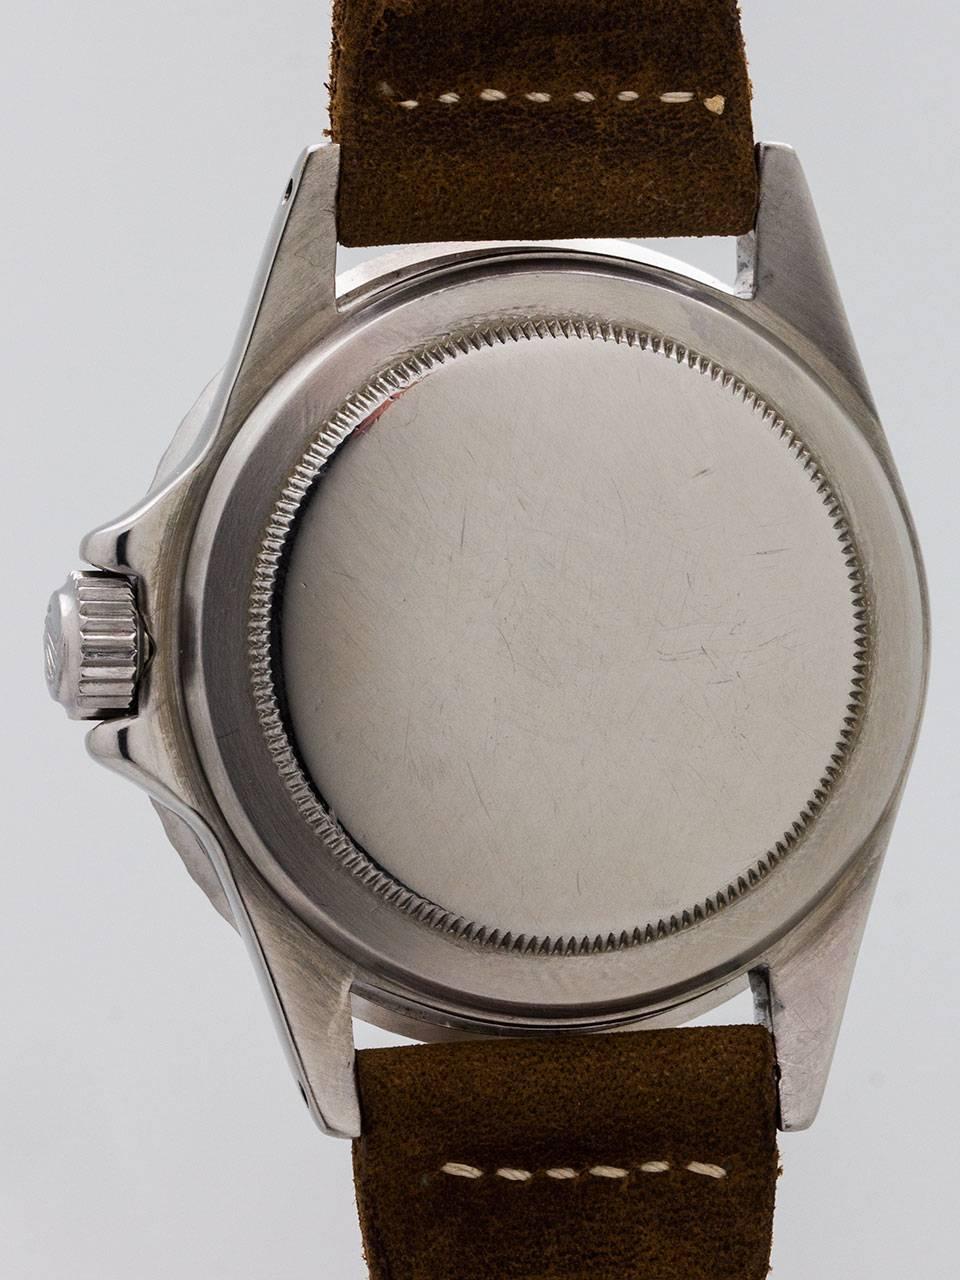 Men's Rolex Stainless Steel Submariner Wristwatch Ref 5513 circa 1974